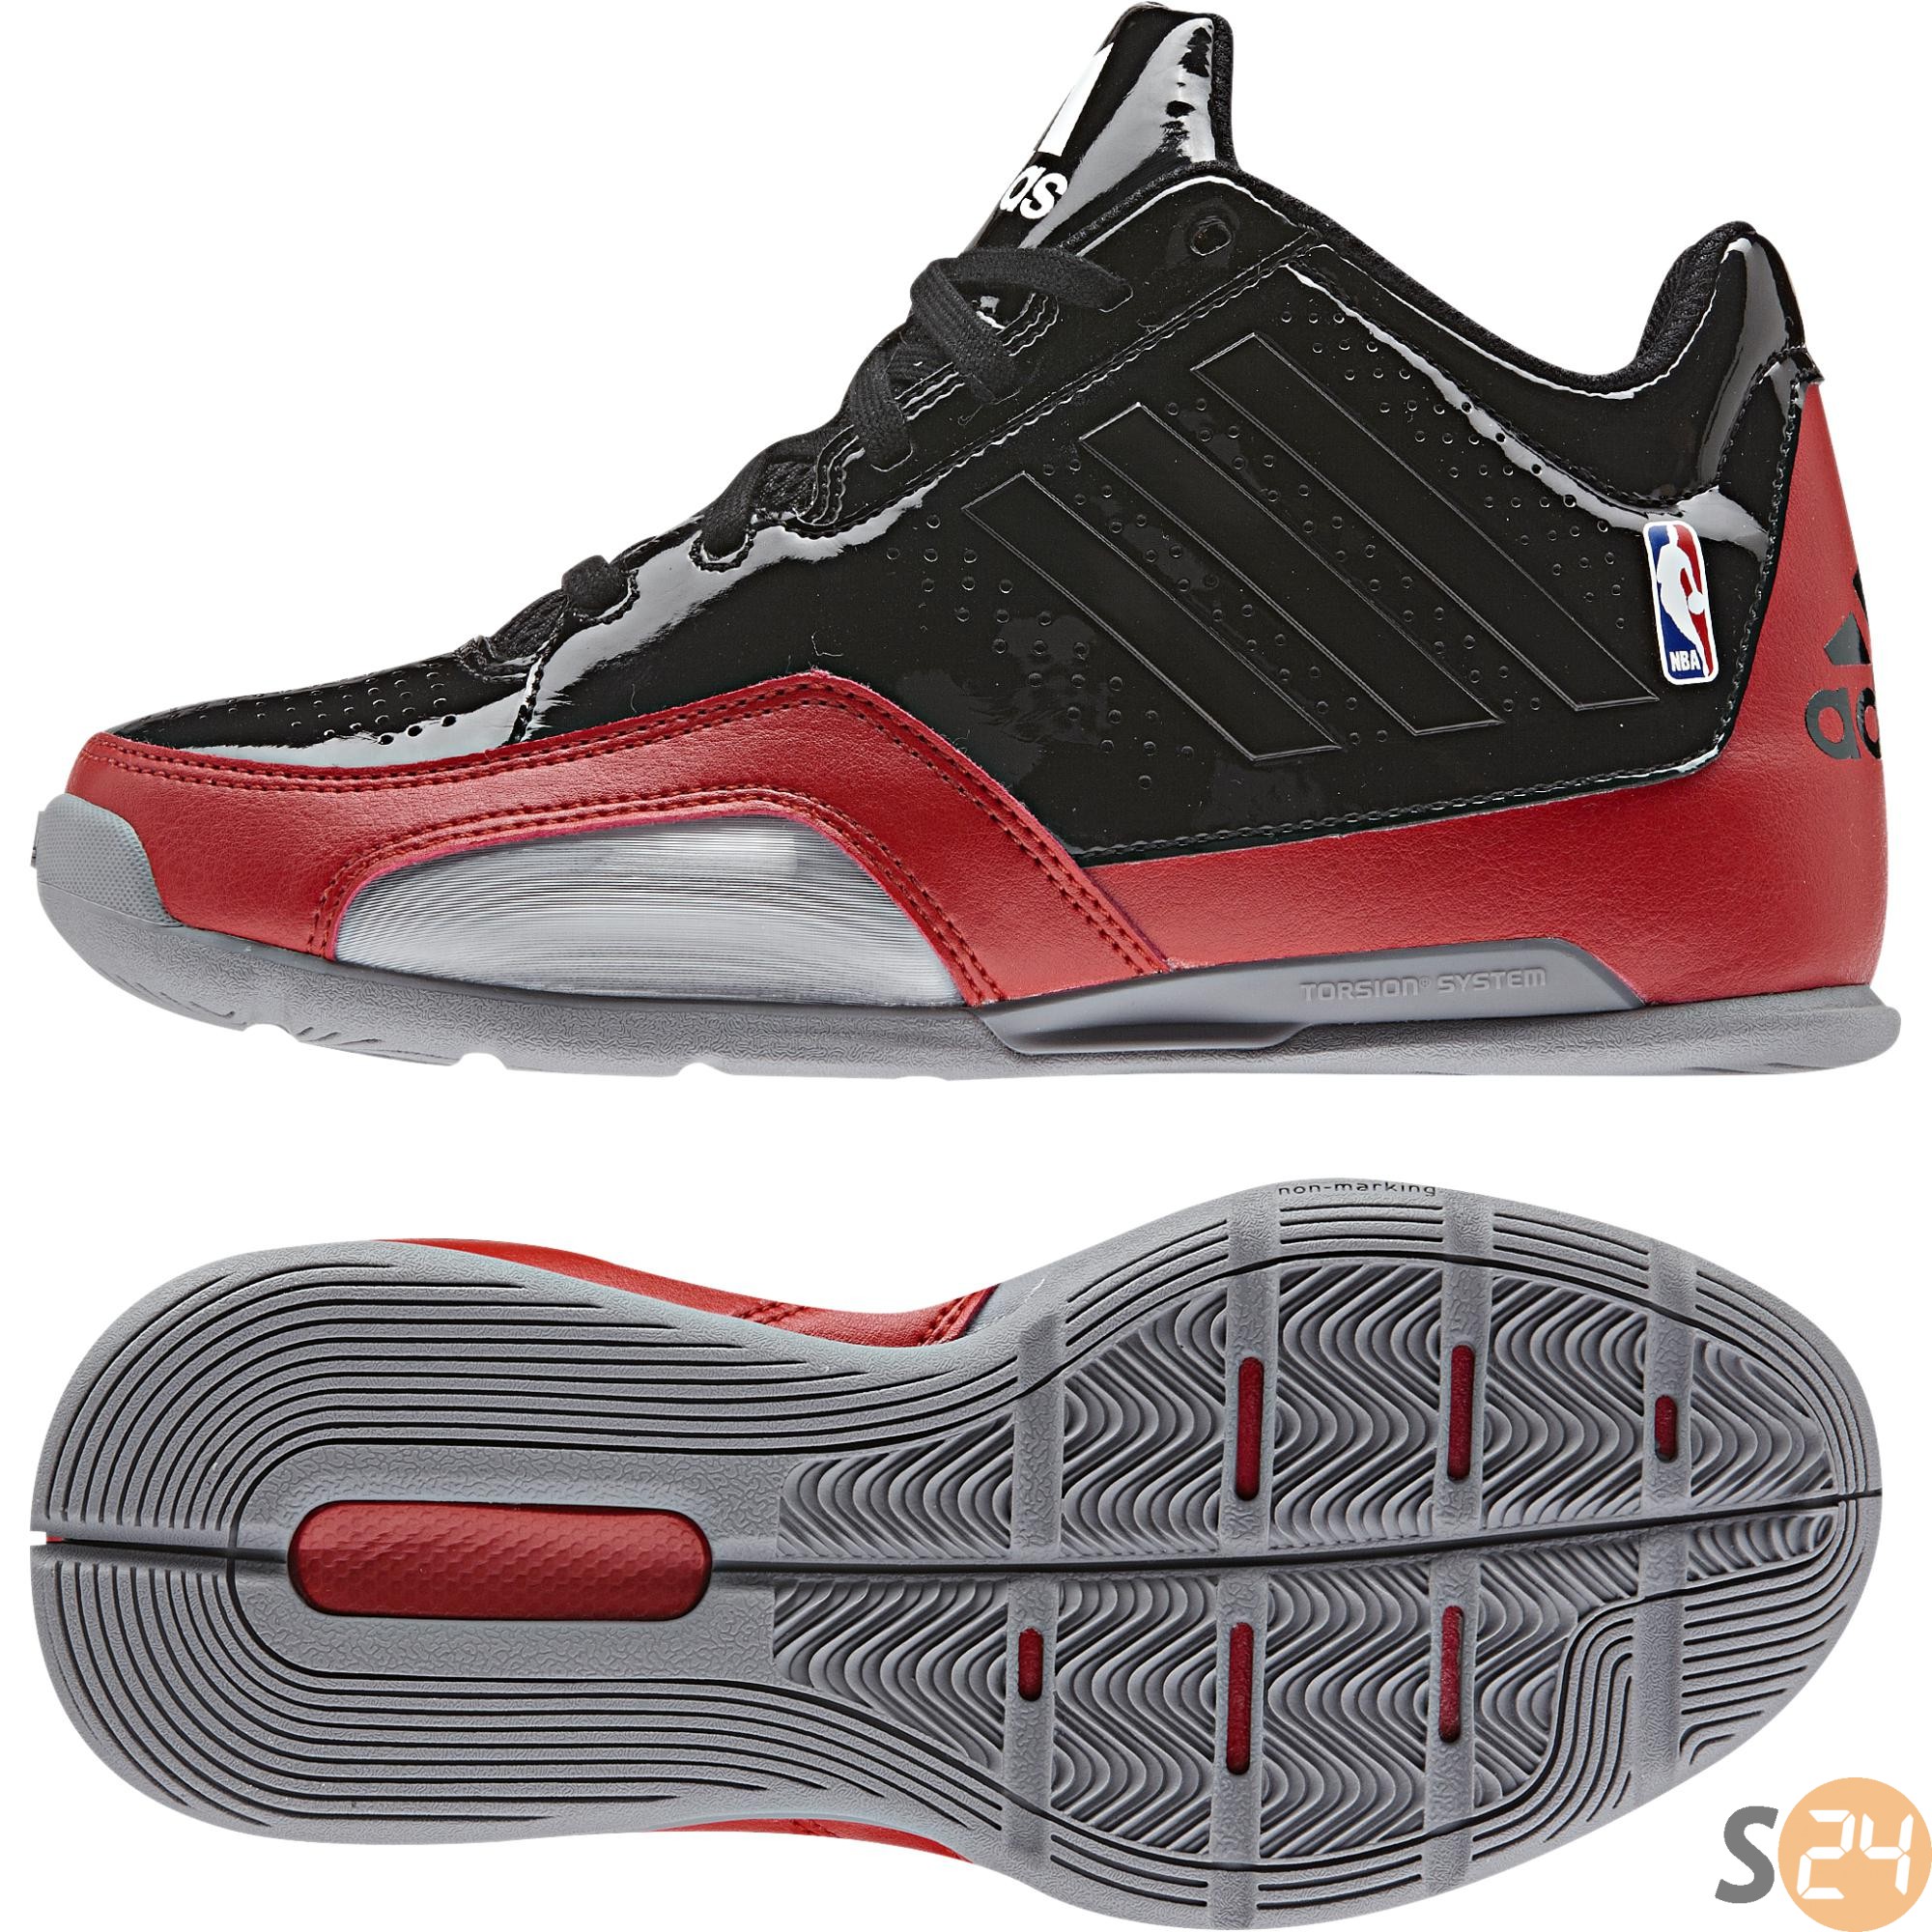 Adidas Kosárlabda cipő 3 series 2015 nba k D69656